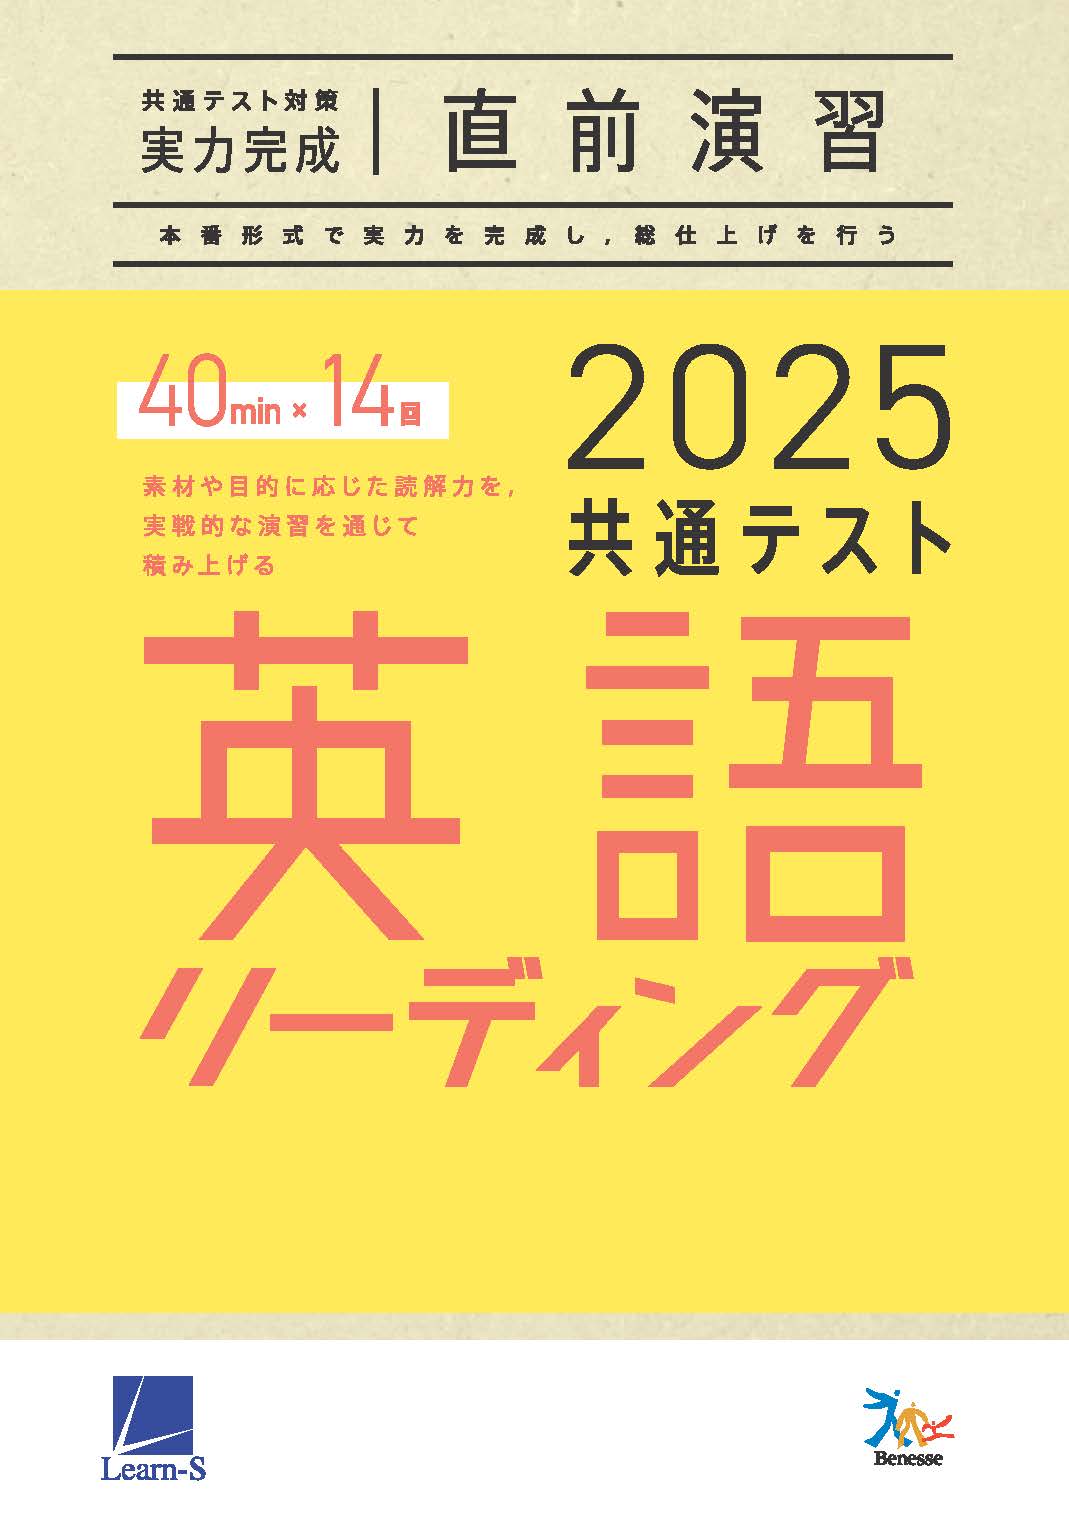 2025共通テスト対策【実力完成】直前演習 英語(リーディング)40minutes×14